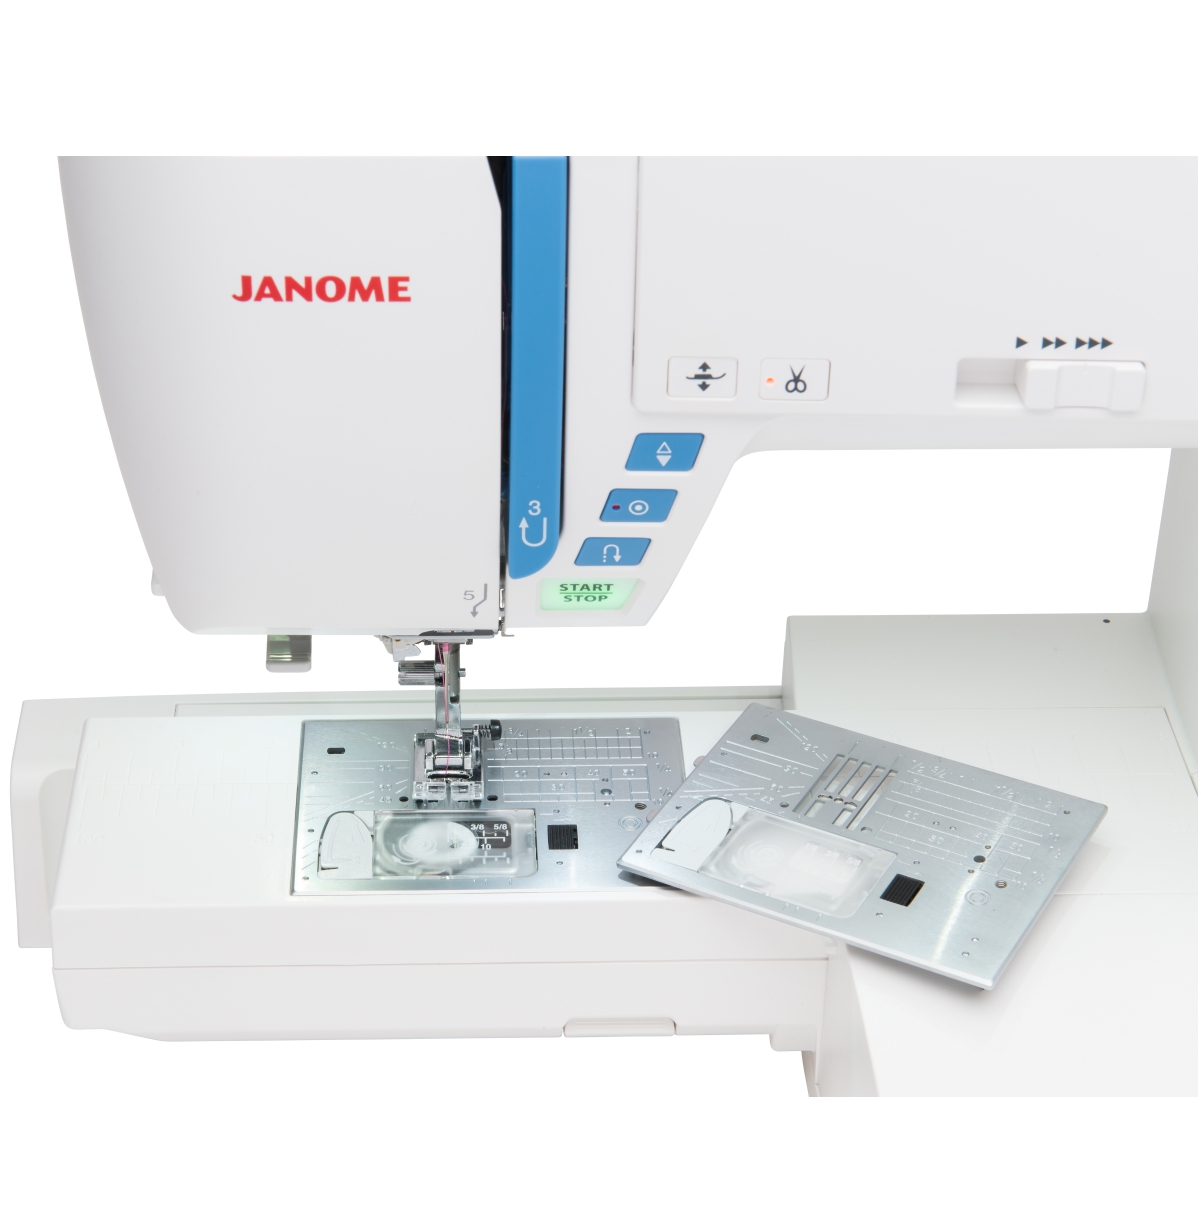 JANOME Skyline S9 Näh- Stickmaschine*